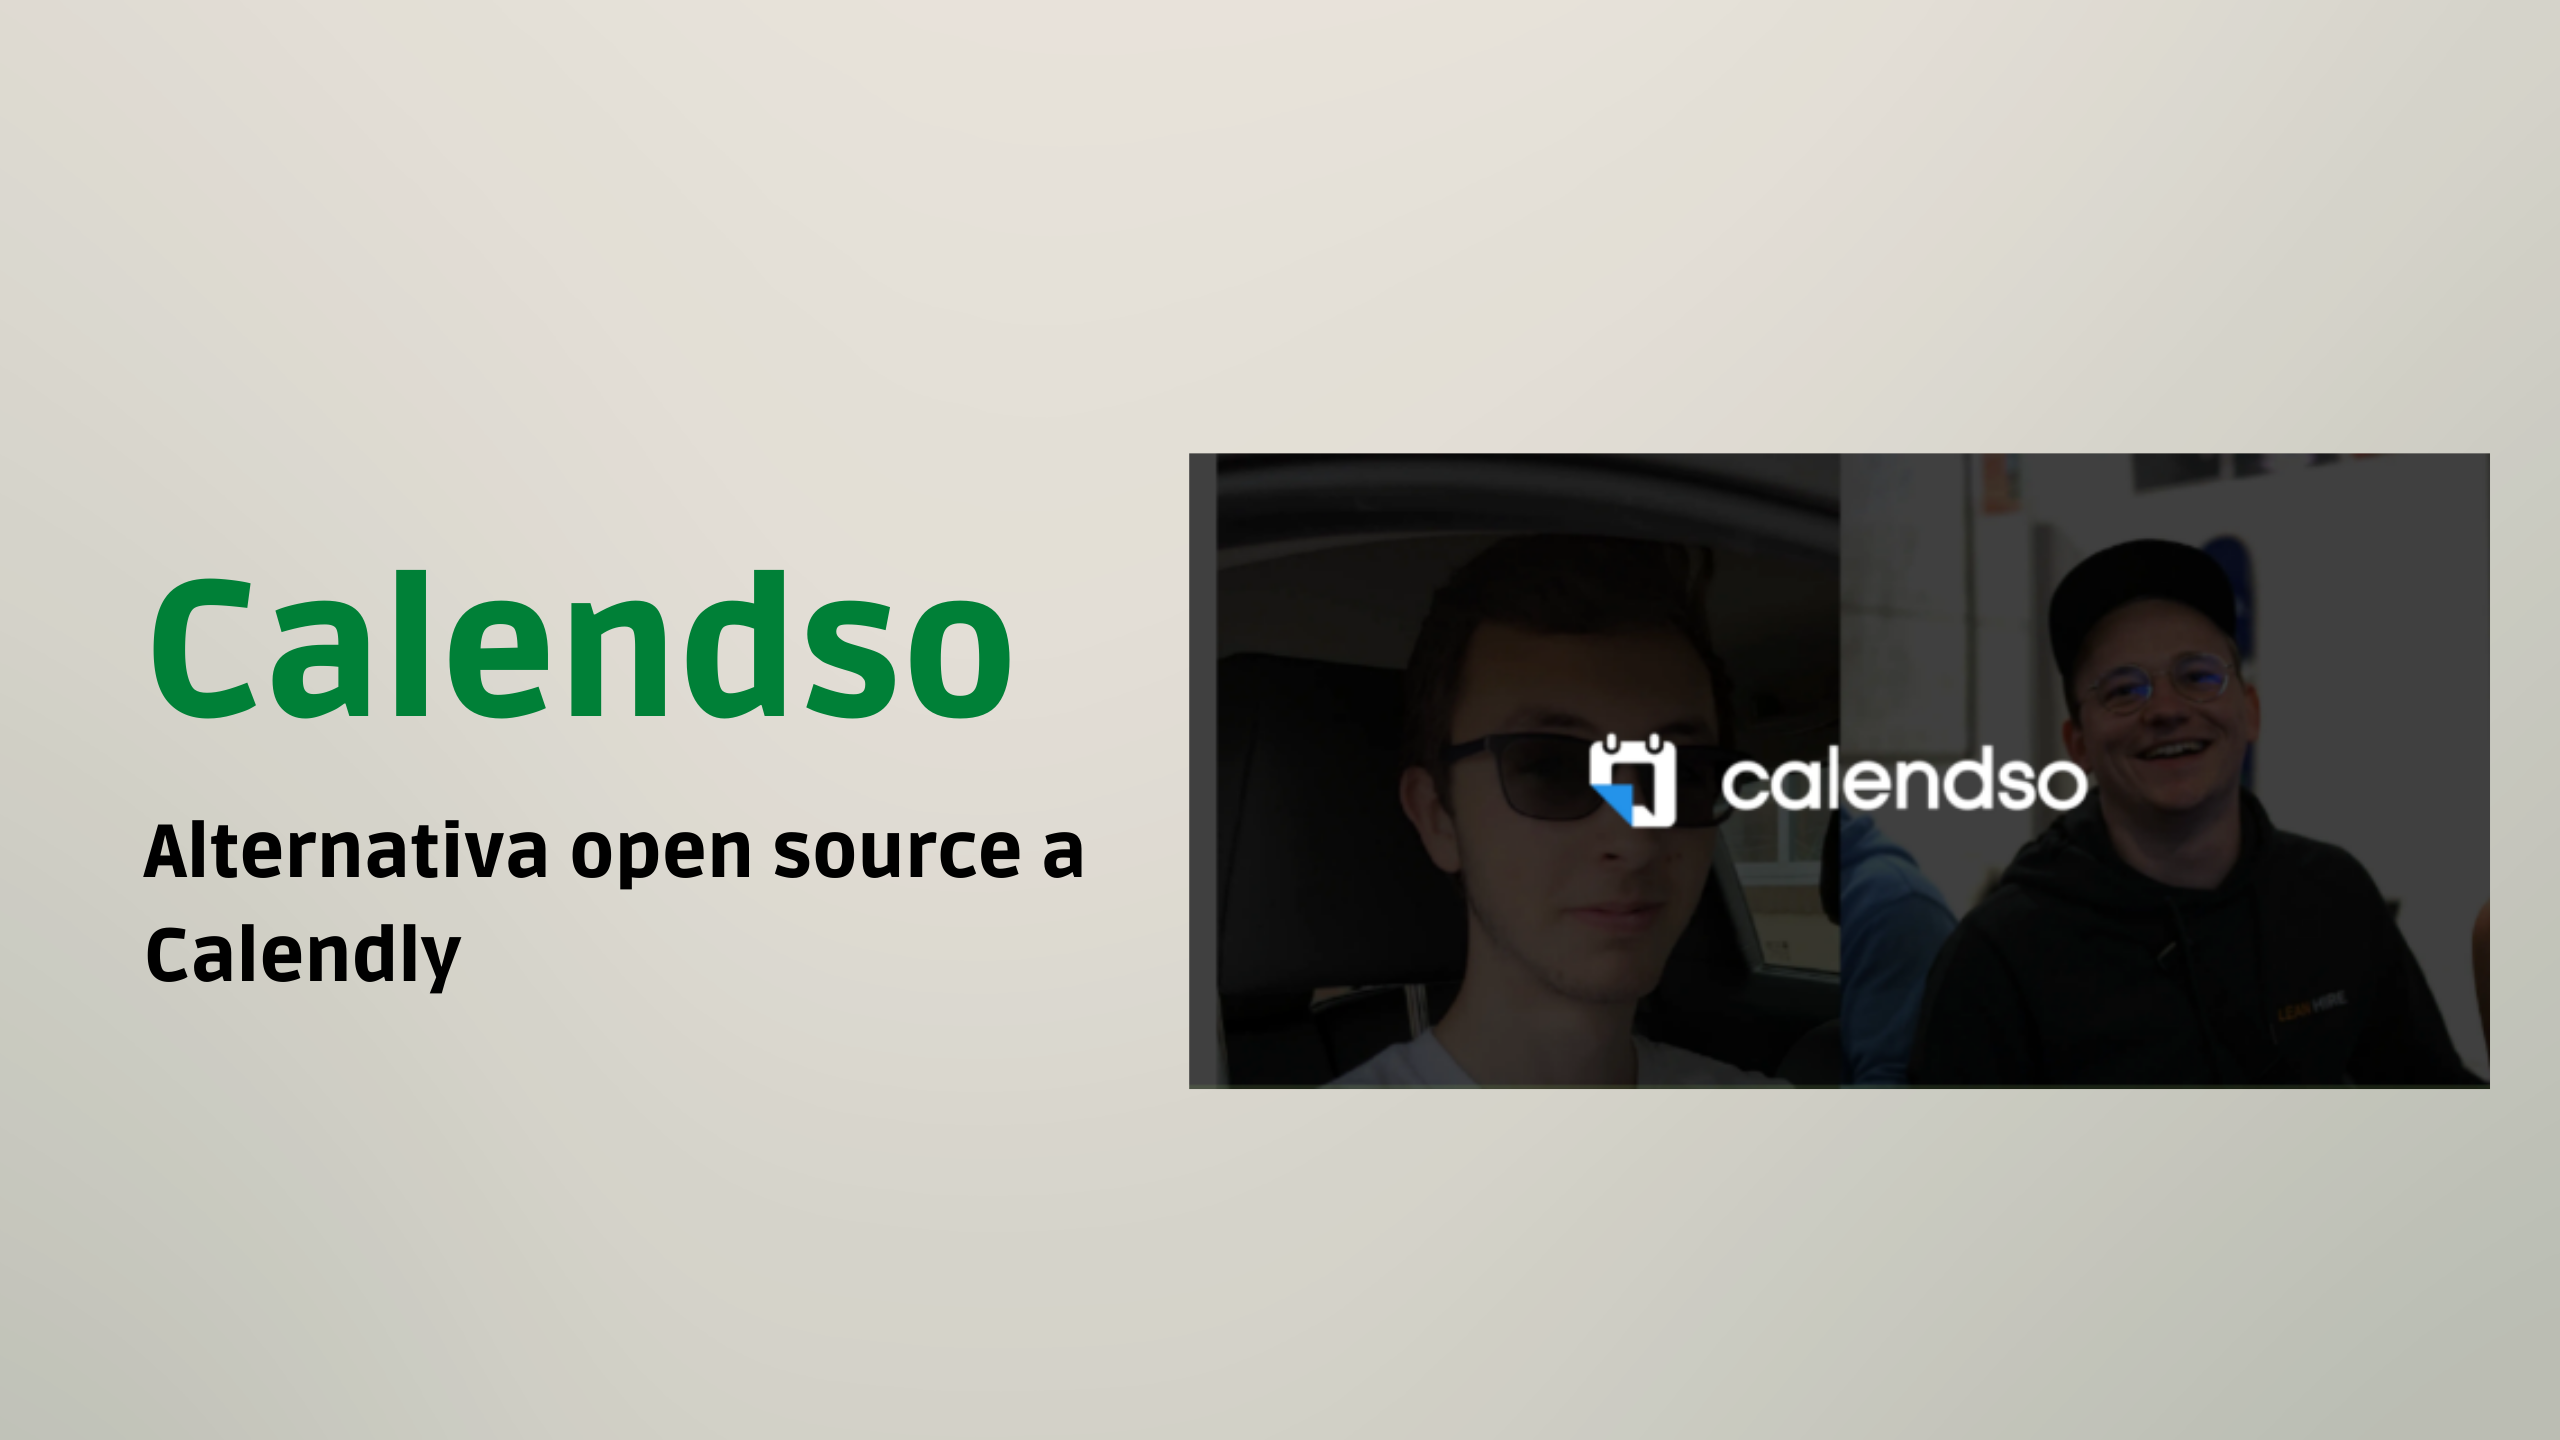 Calendso - alternativa open source a Calendly